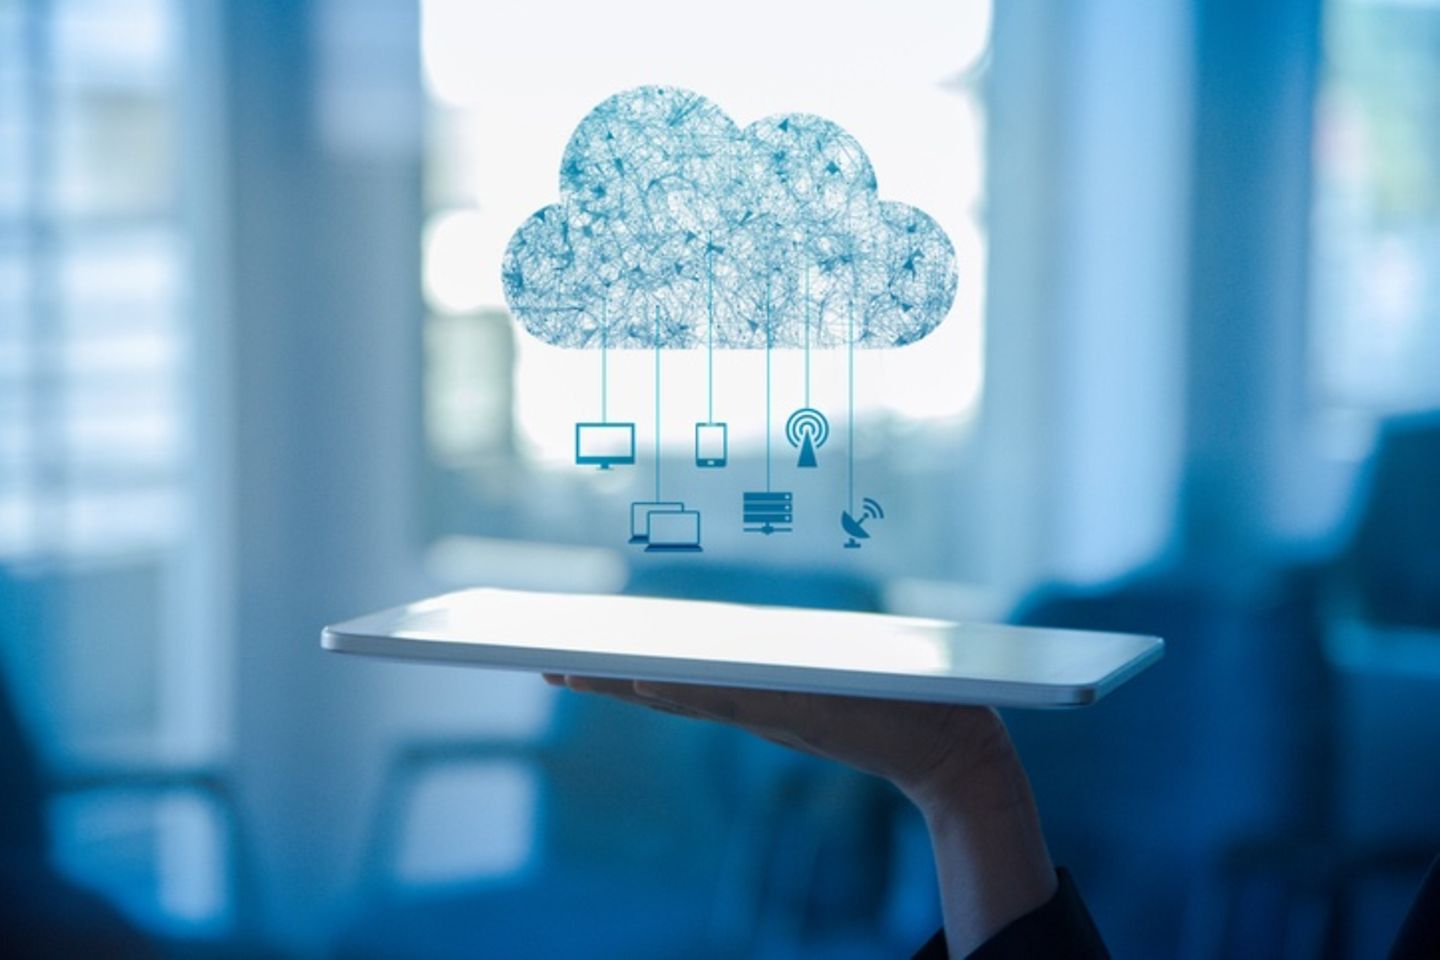 Une tablette est posée sur une main, par-dessus laquelle se trouve un dessin de nuage et des icônes.